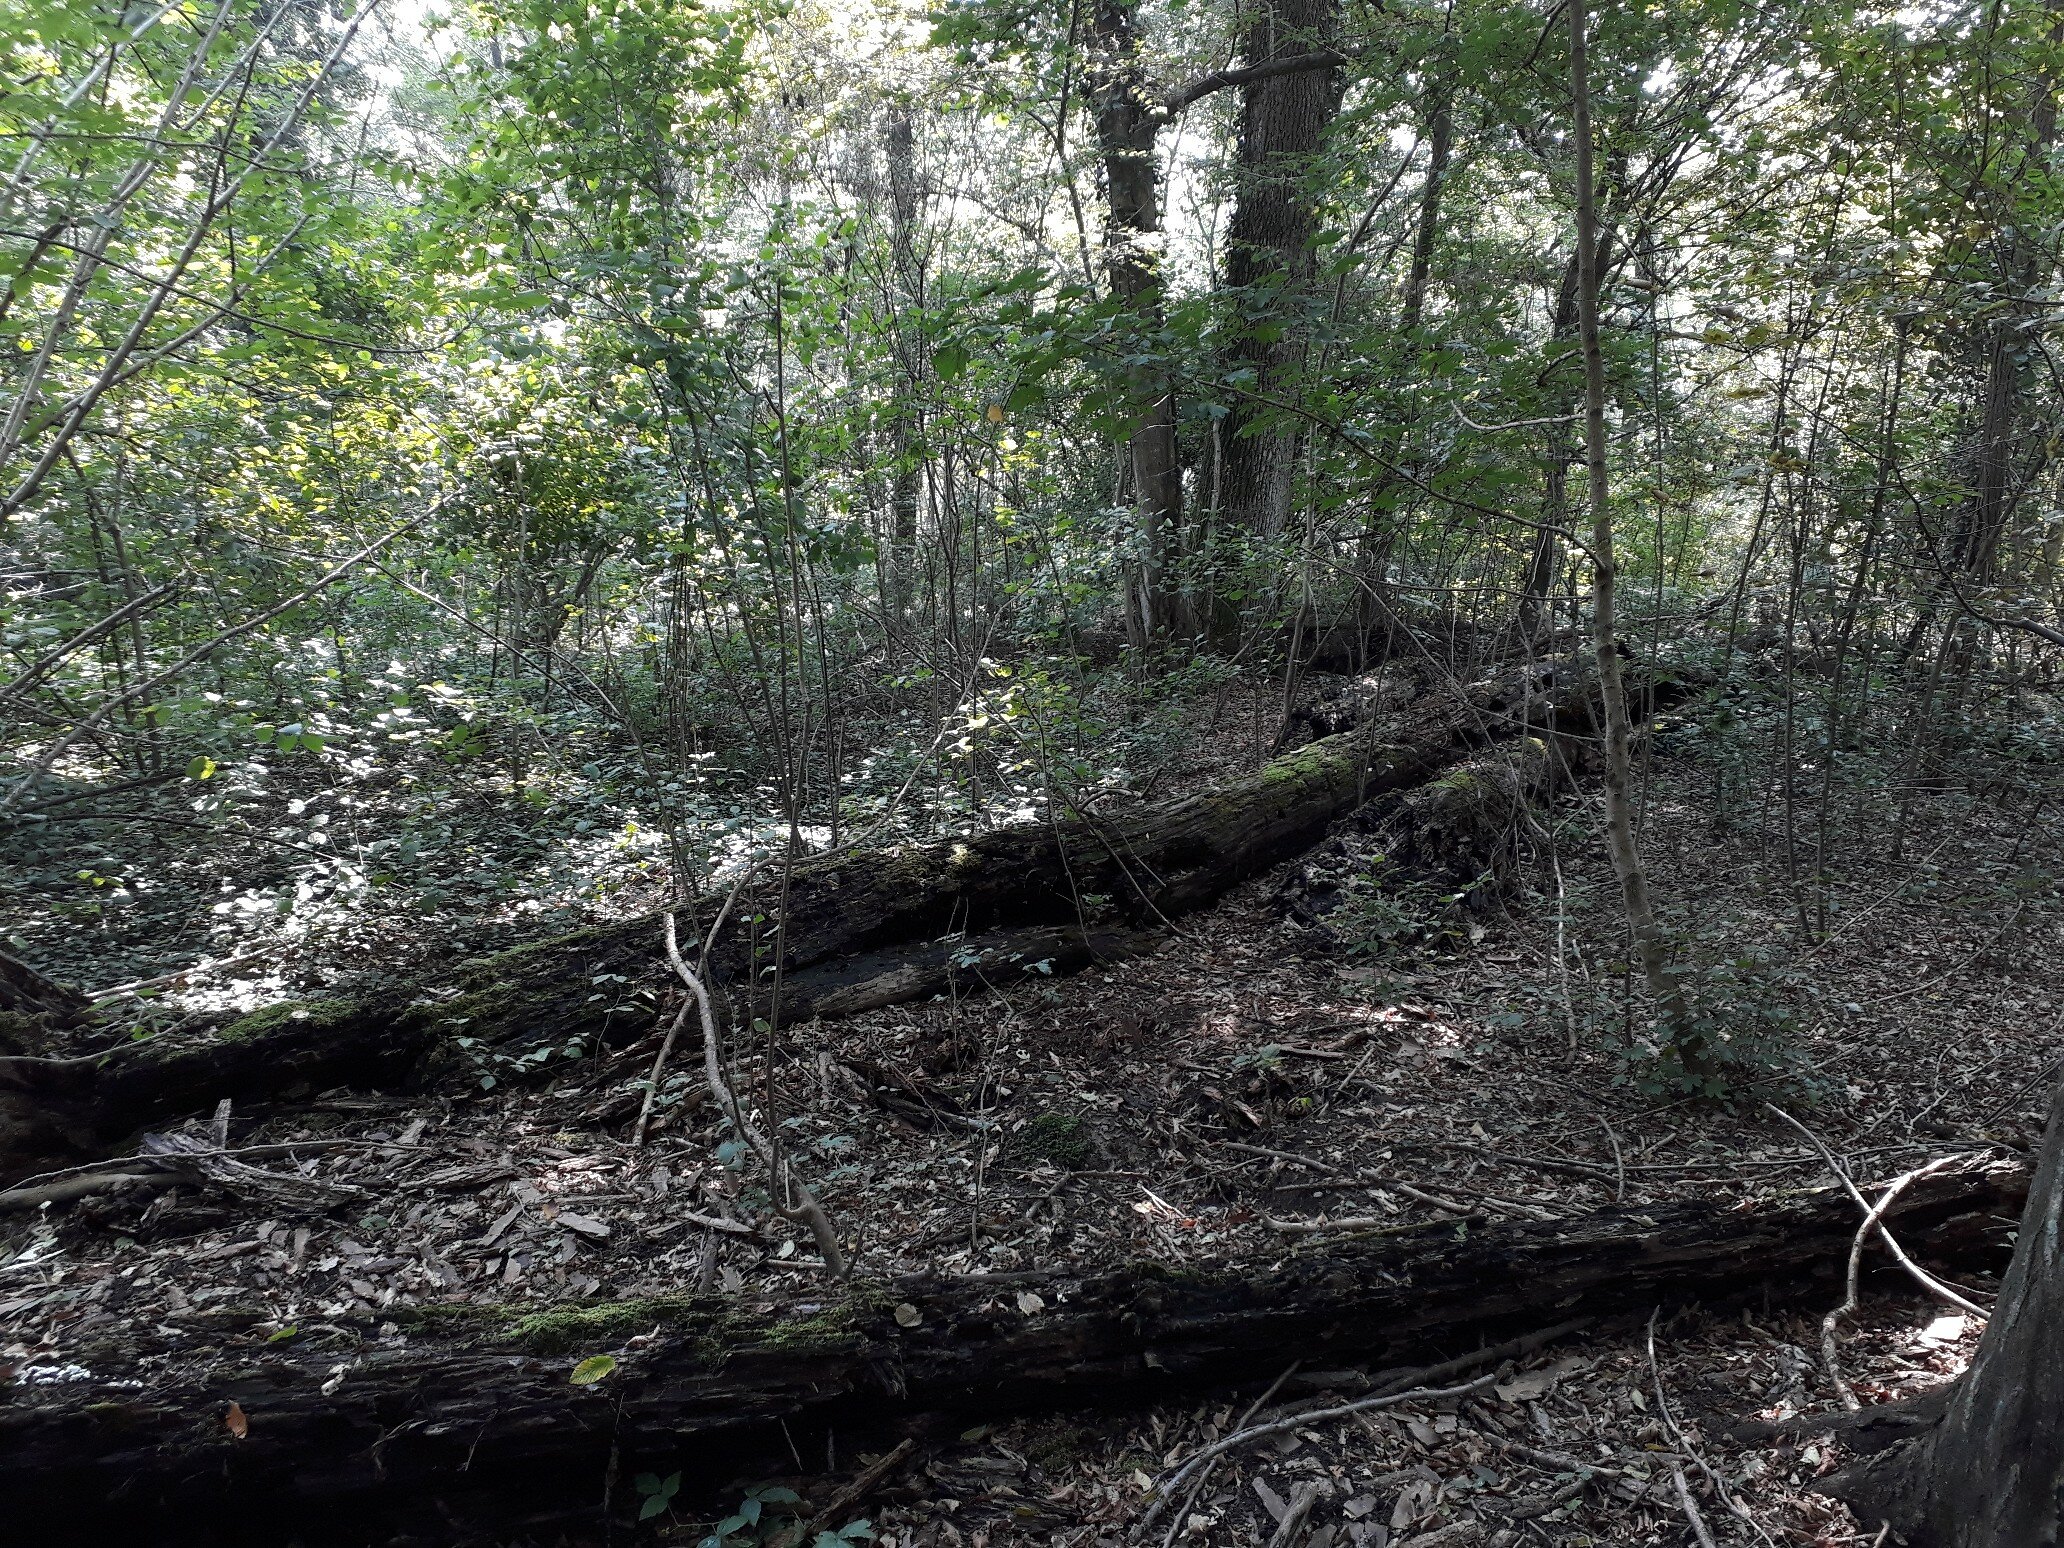 due tronchi a terra con andamento sinistra destra e numerosi rami circostanti, all'interno di uno scuro ambiente boschivo